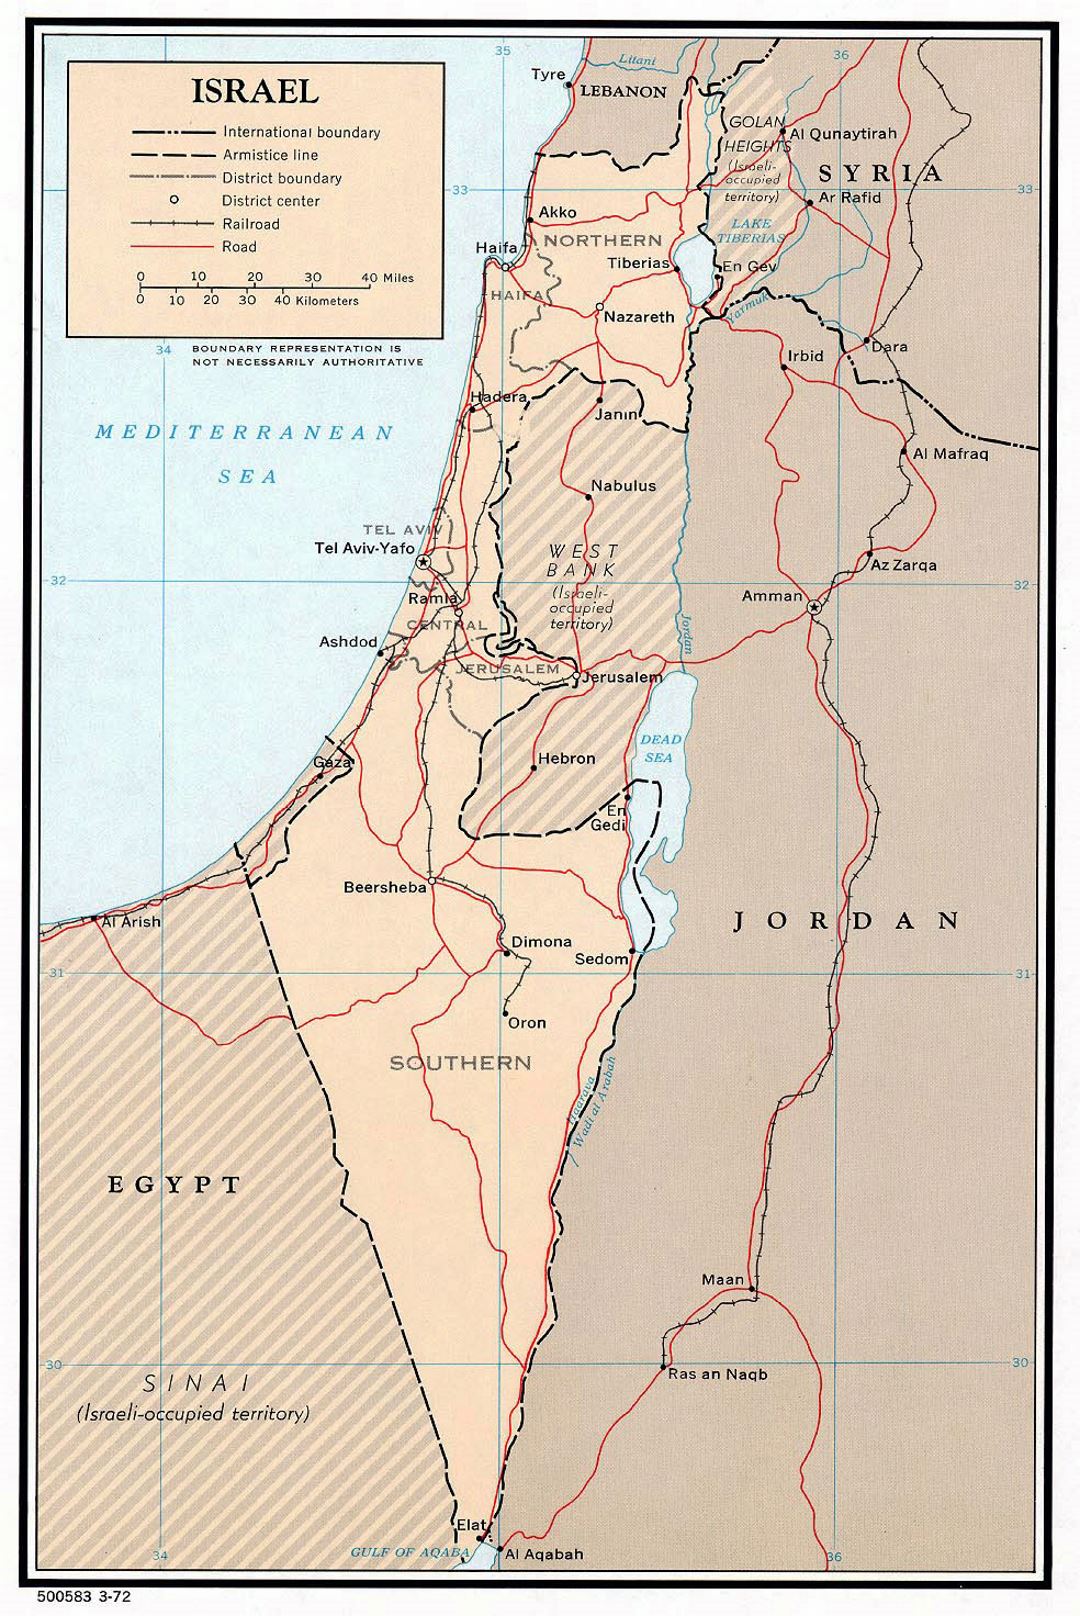 Detallado mapa político y administrativo de Israel con carreteras, ferrocarriles y principales ciudades - 1972